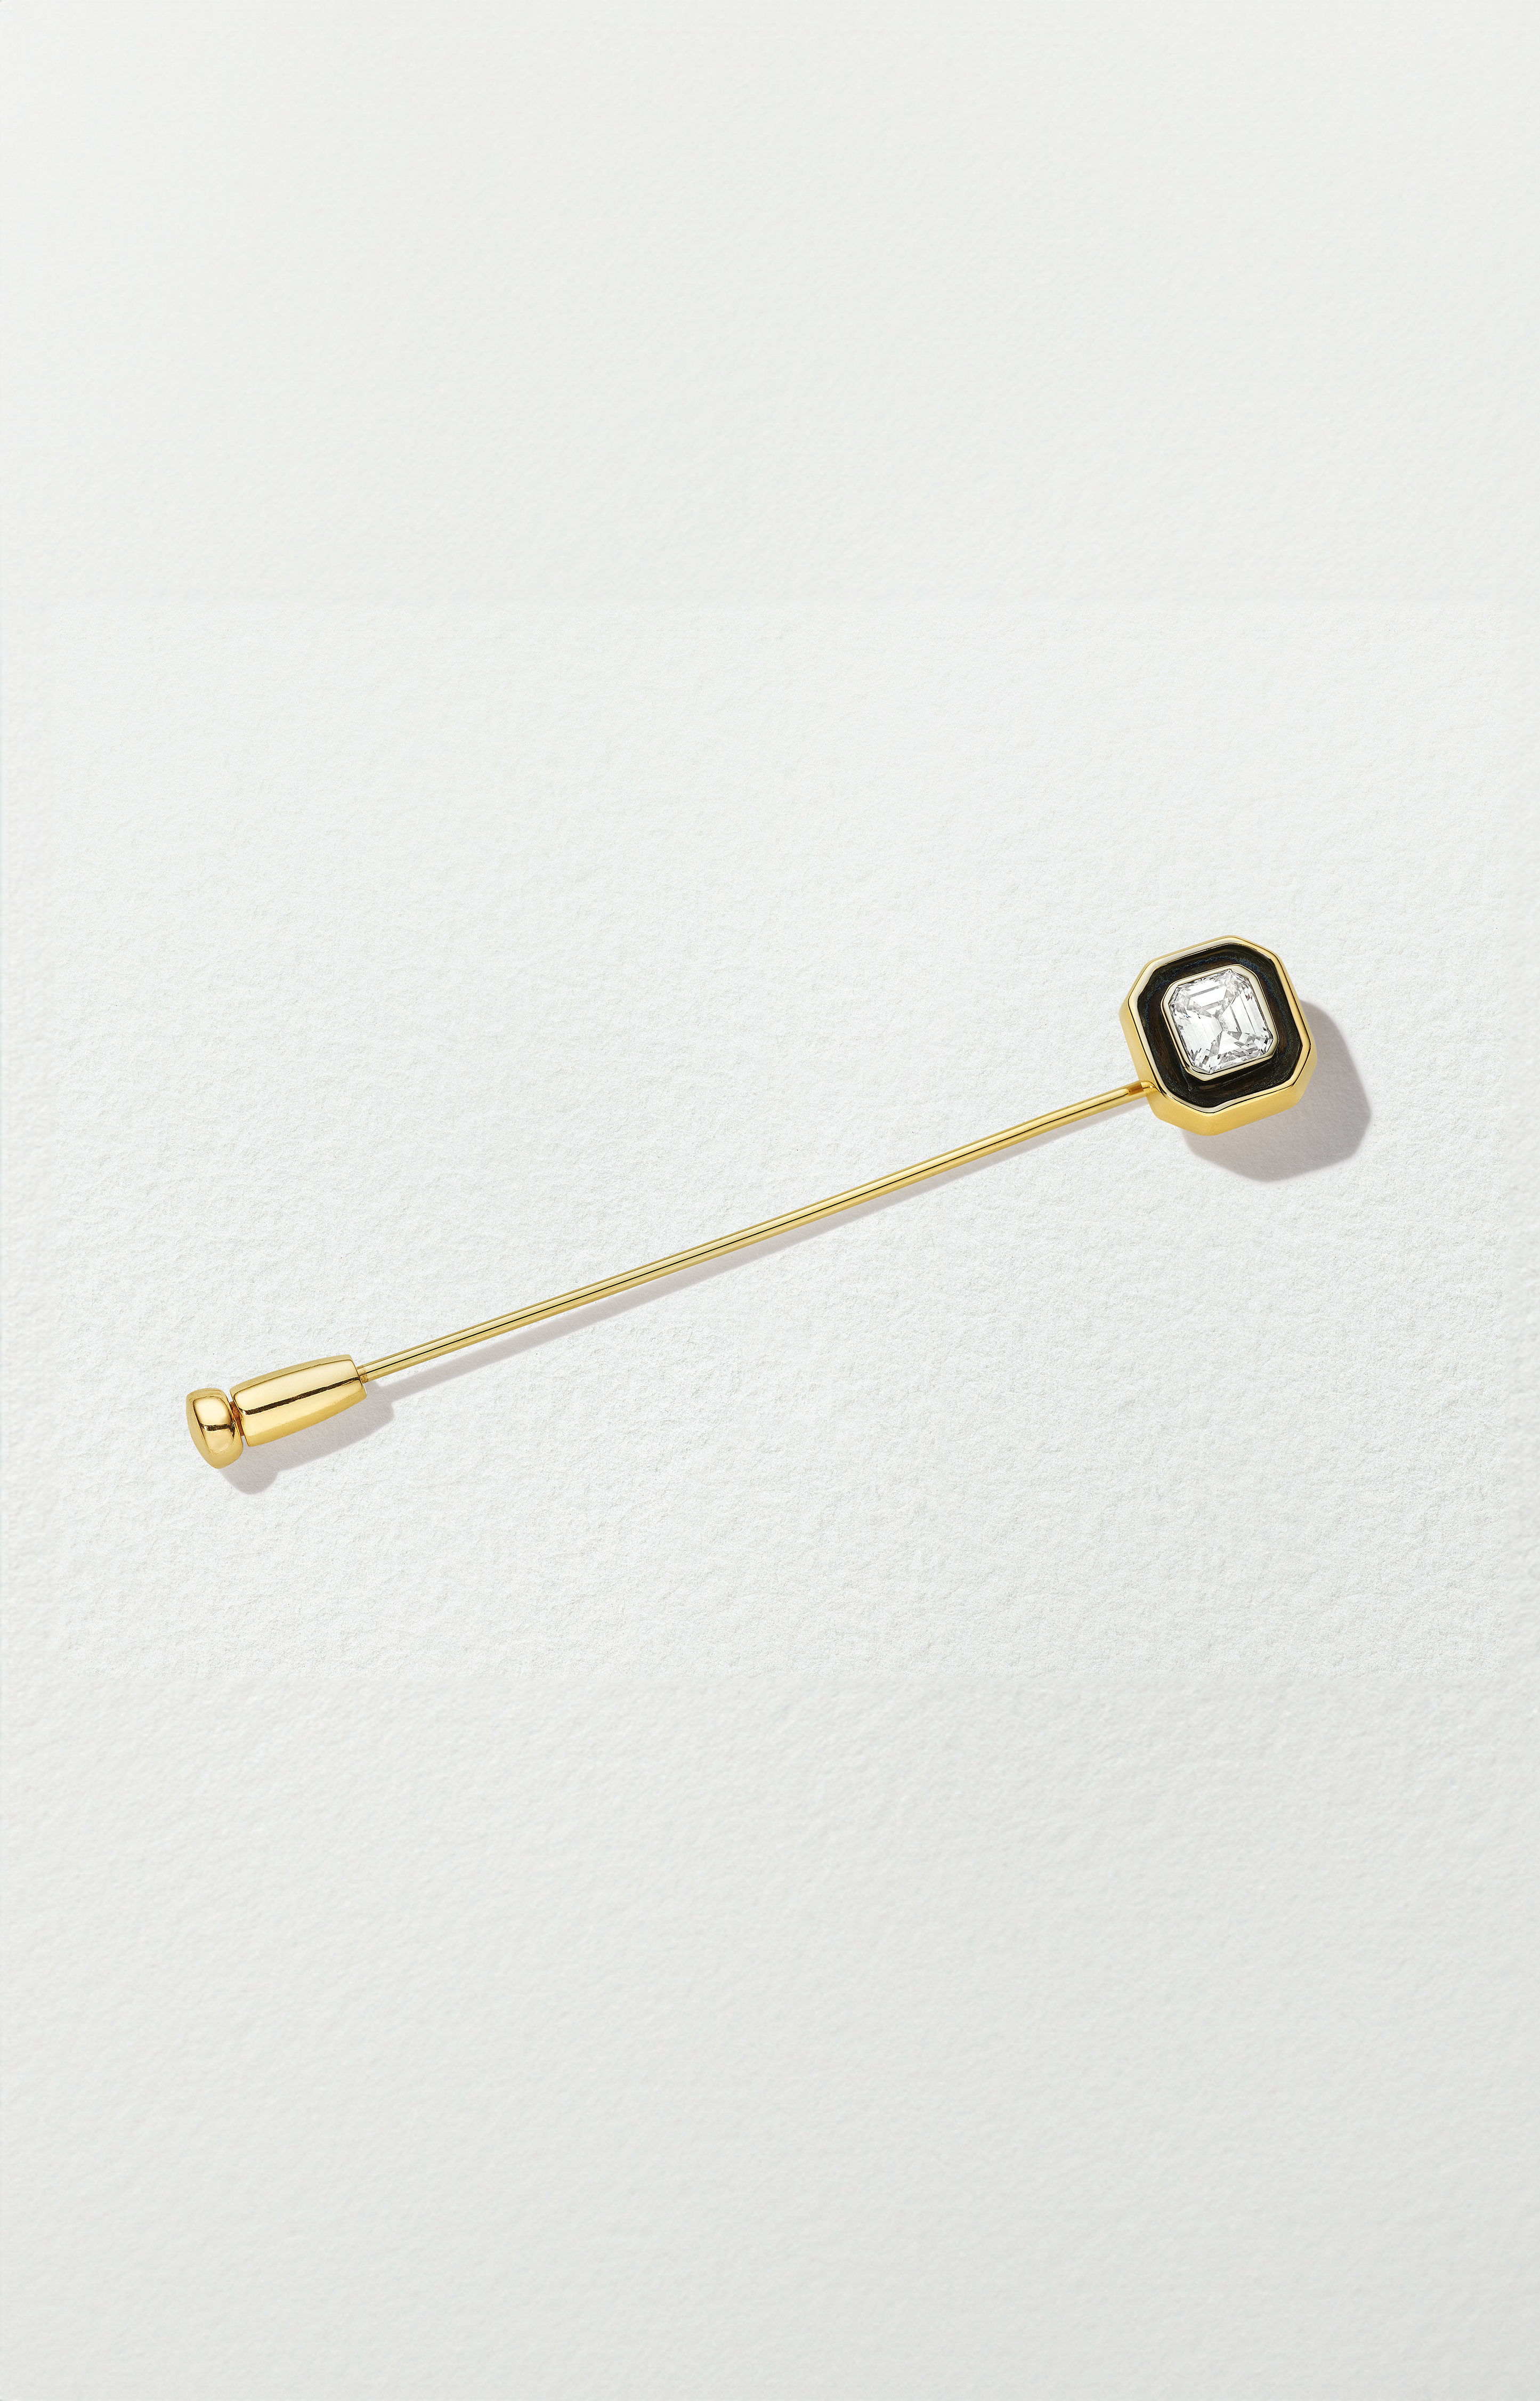 18K Yellow Gold Asscher Cut Diamond Stick Pin